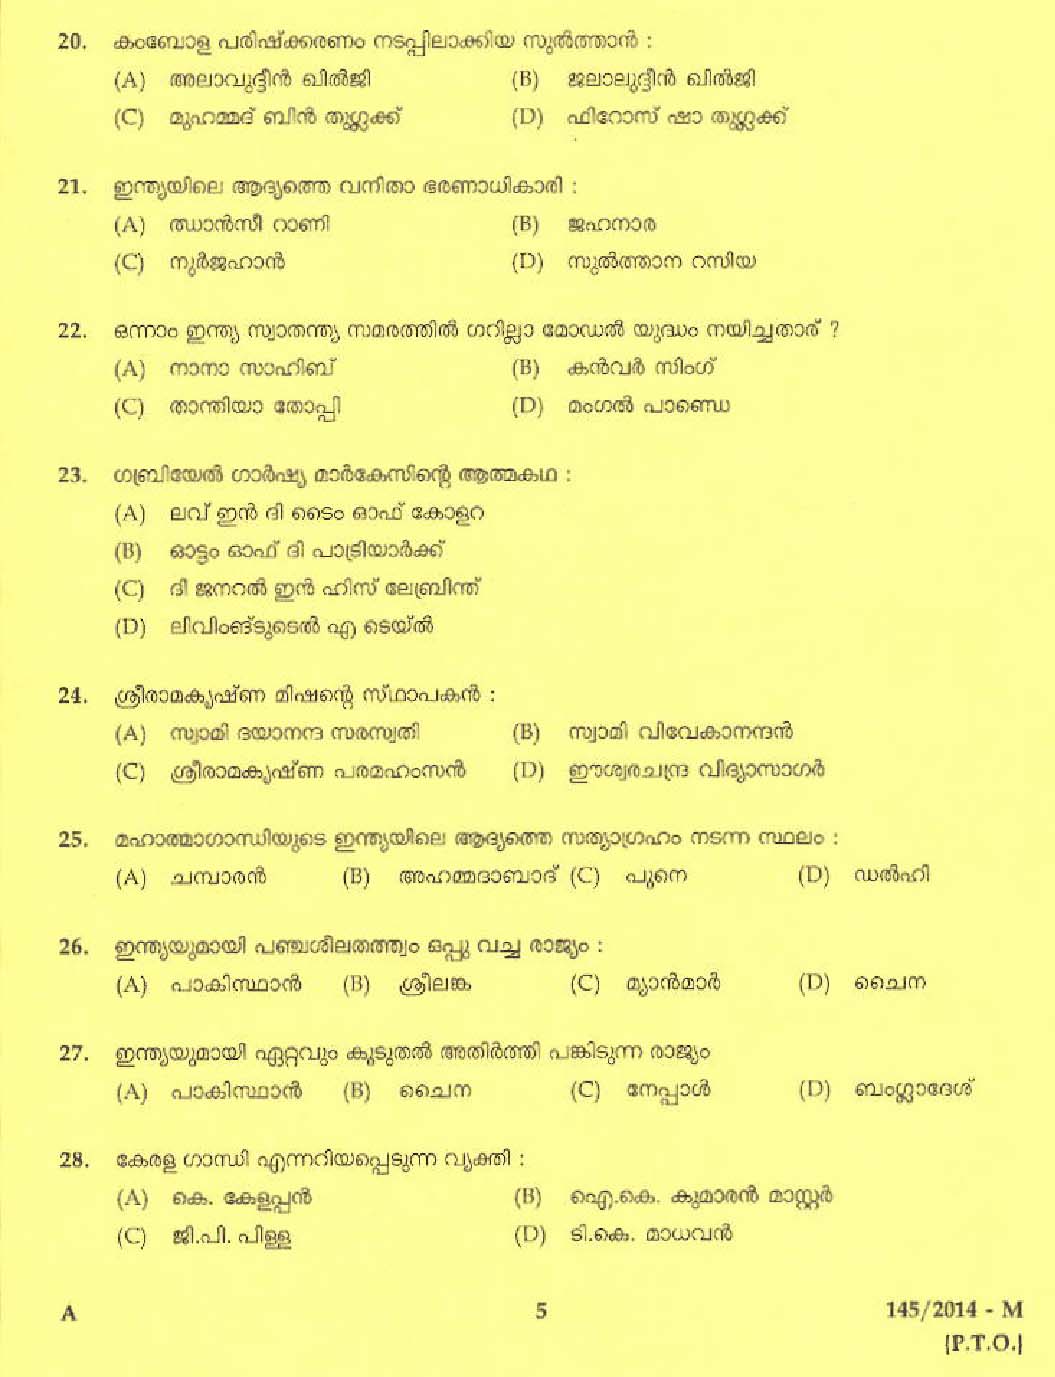 Kerala PSC Driver Grade II Exam 2014 Question Paper Code 1452014 M 3